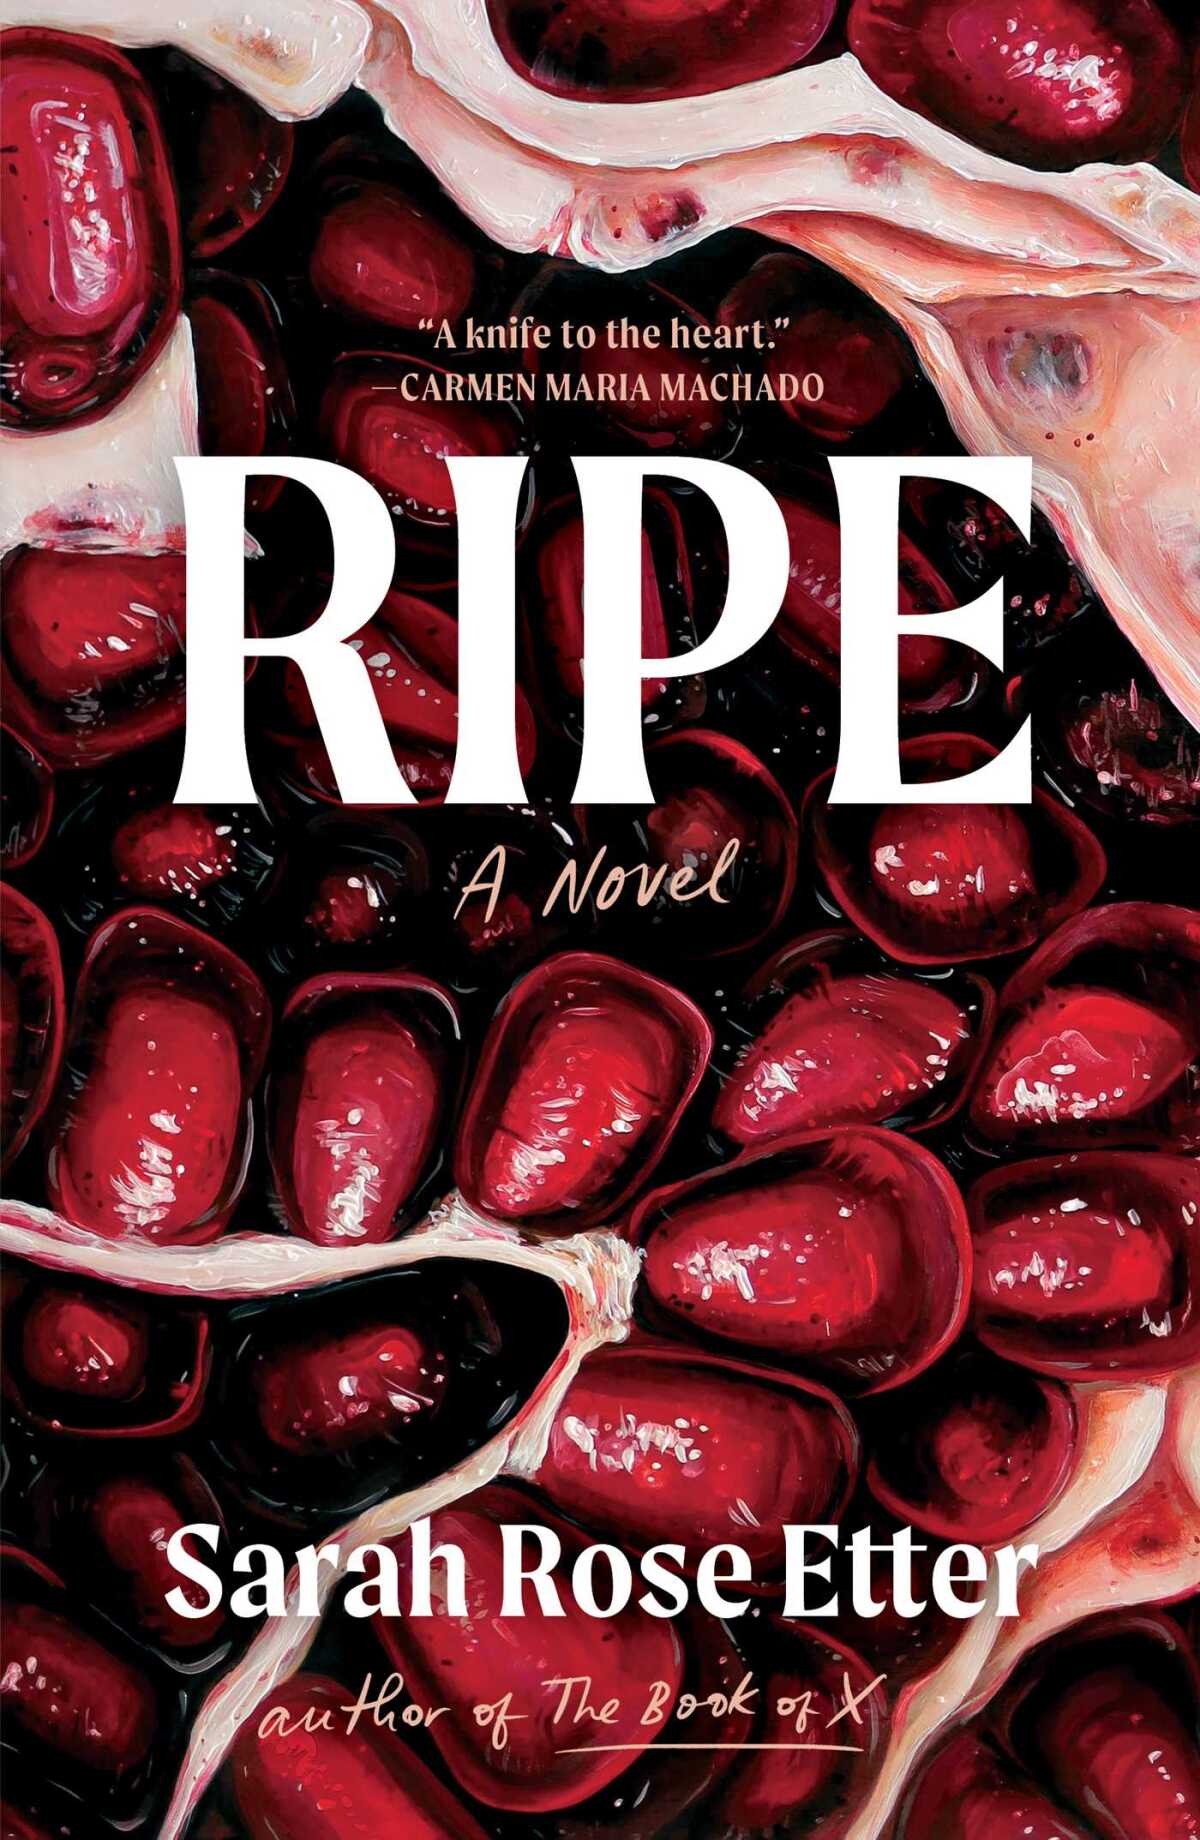 Das Buchcover von „Ripe“ von Sarah Rose Etter enthält Granatapfelkerne 